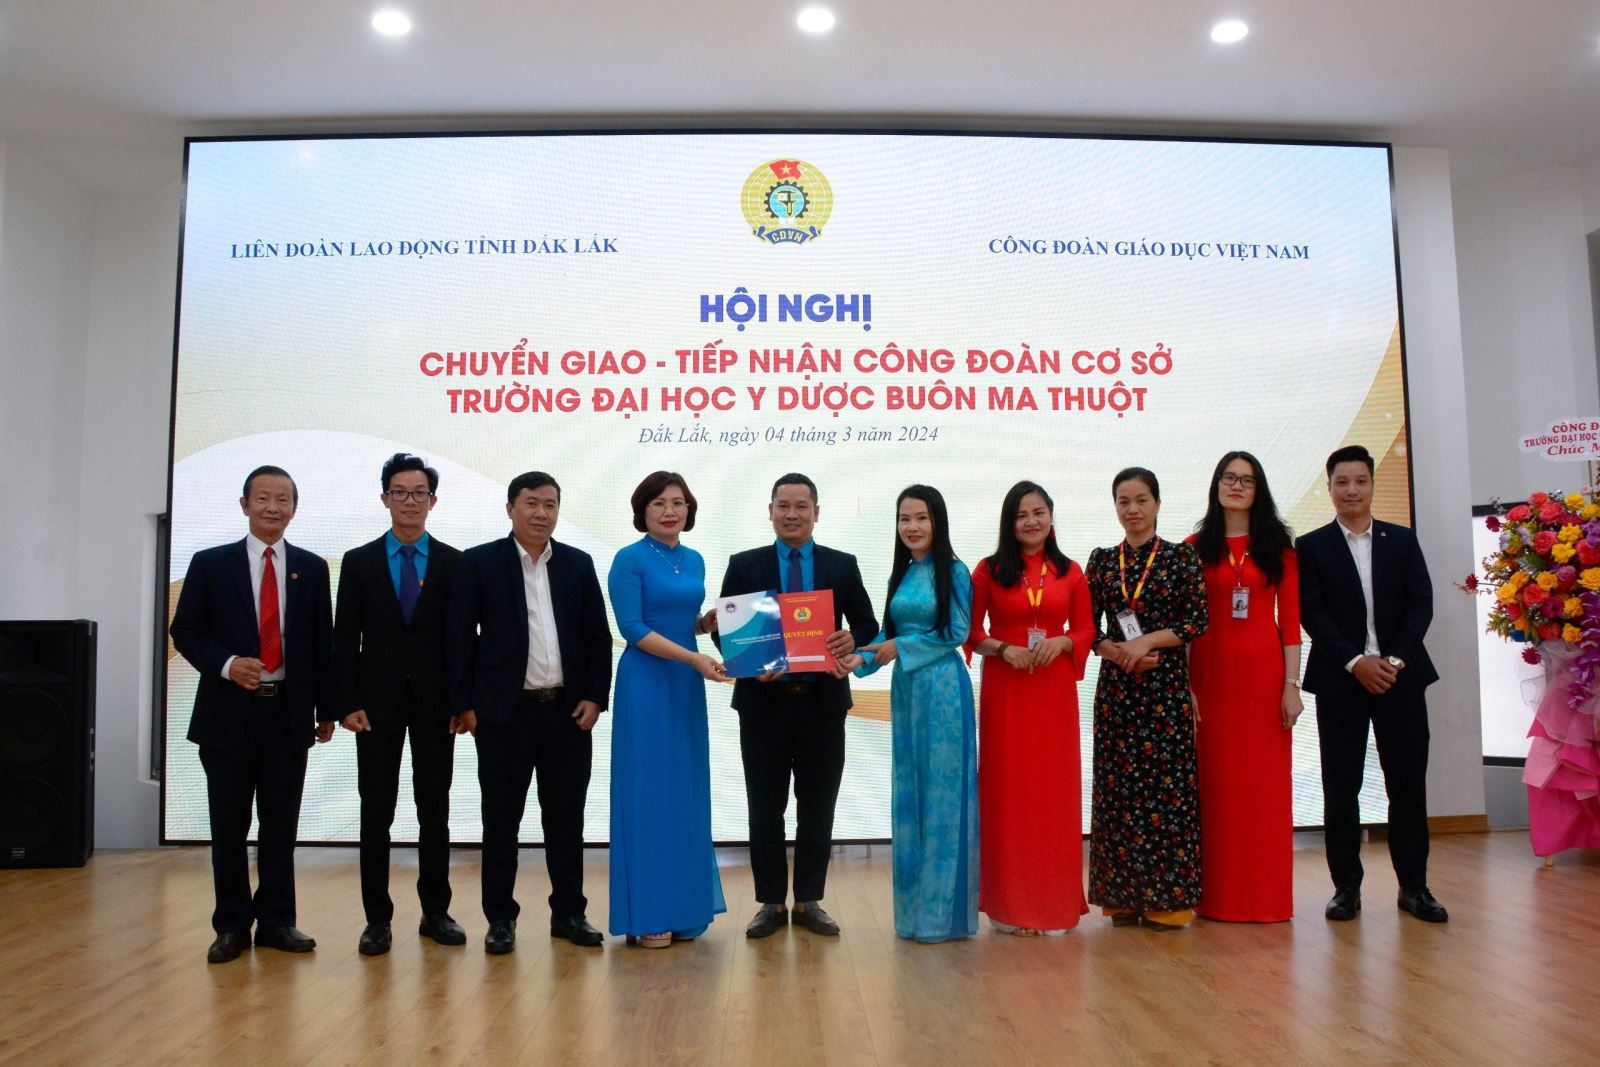 Công đoàn Giáo dục Việt Nam phối hợp tổ chức Hội nghị Chuyển giao - Tiếp nhận Công đoàn cơ sở Trường Đại học Y Dược Buôn Ma Thuột